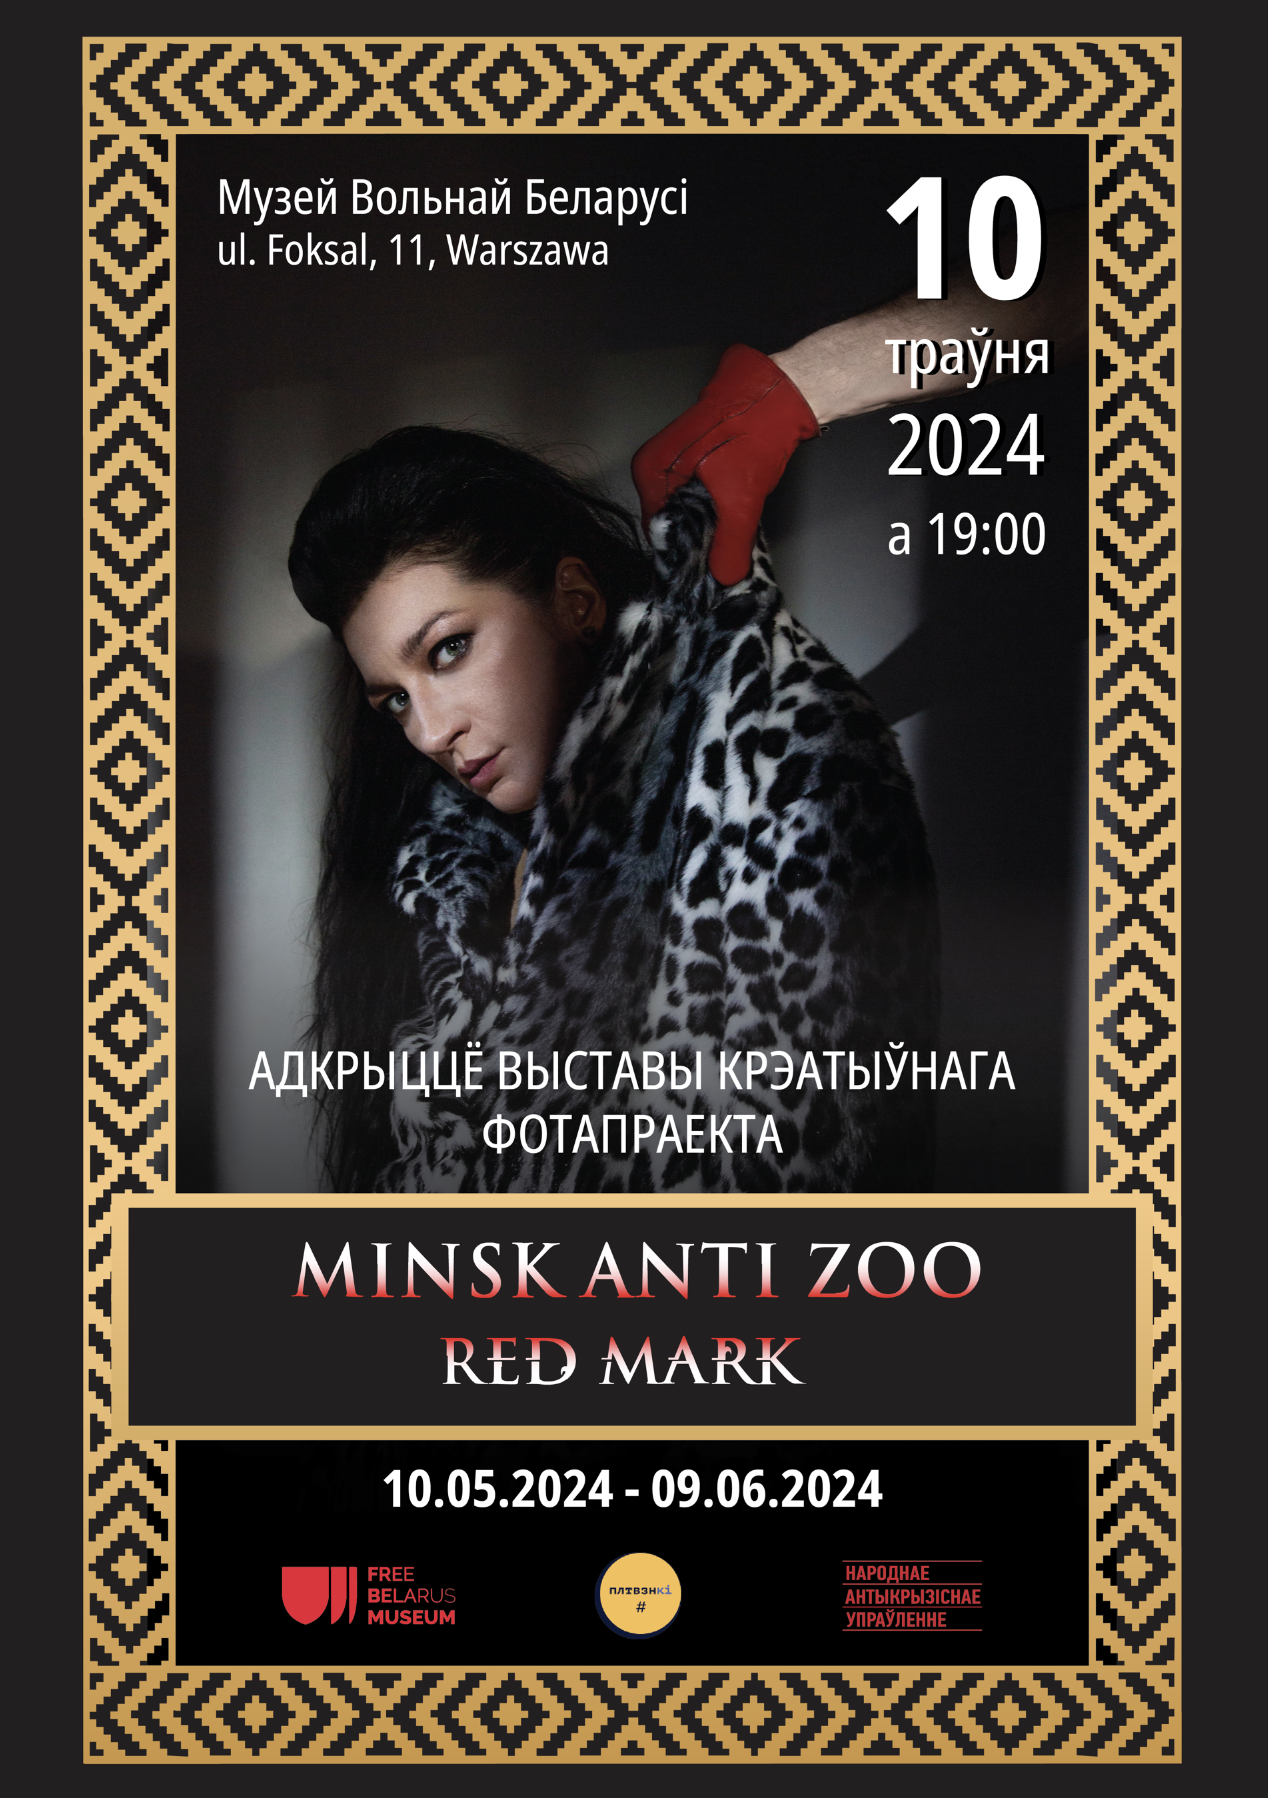 «Minsk Anti Zoo. Red Mark» – крэатыўны праект, прысвечаны жанчынам у зняволенні, адкрыецца ў Музеі Вольнай Беларусі